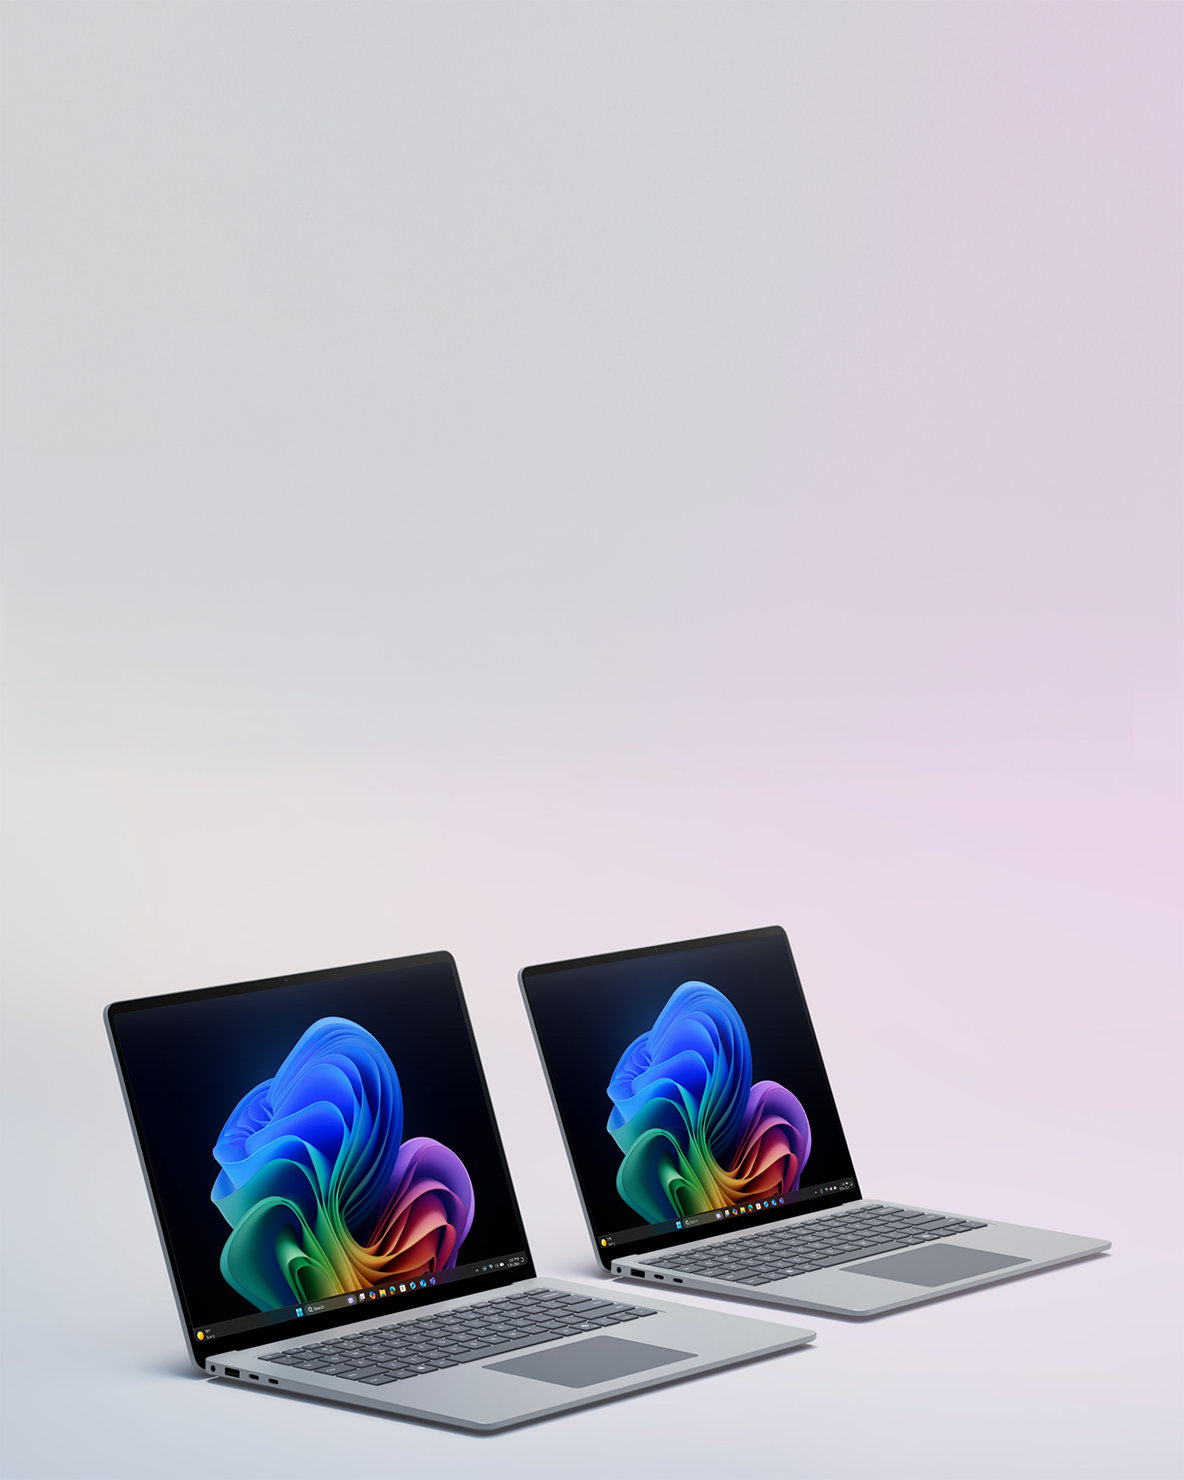 Un'immagine di due dispositivi Surface Laptop affiancati